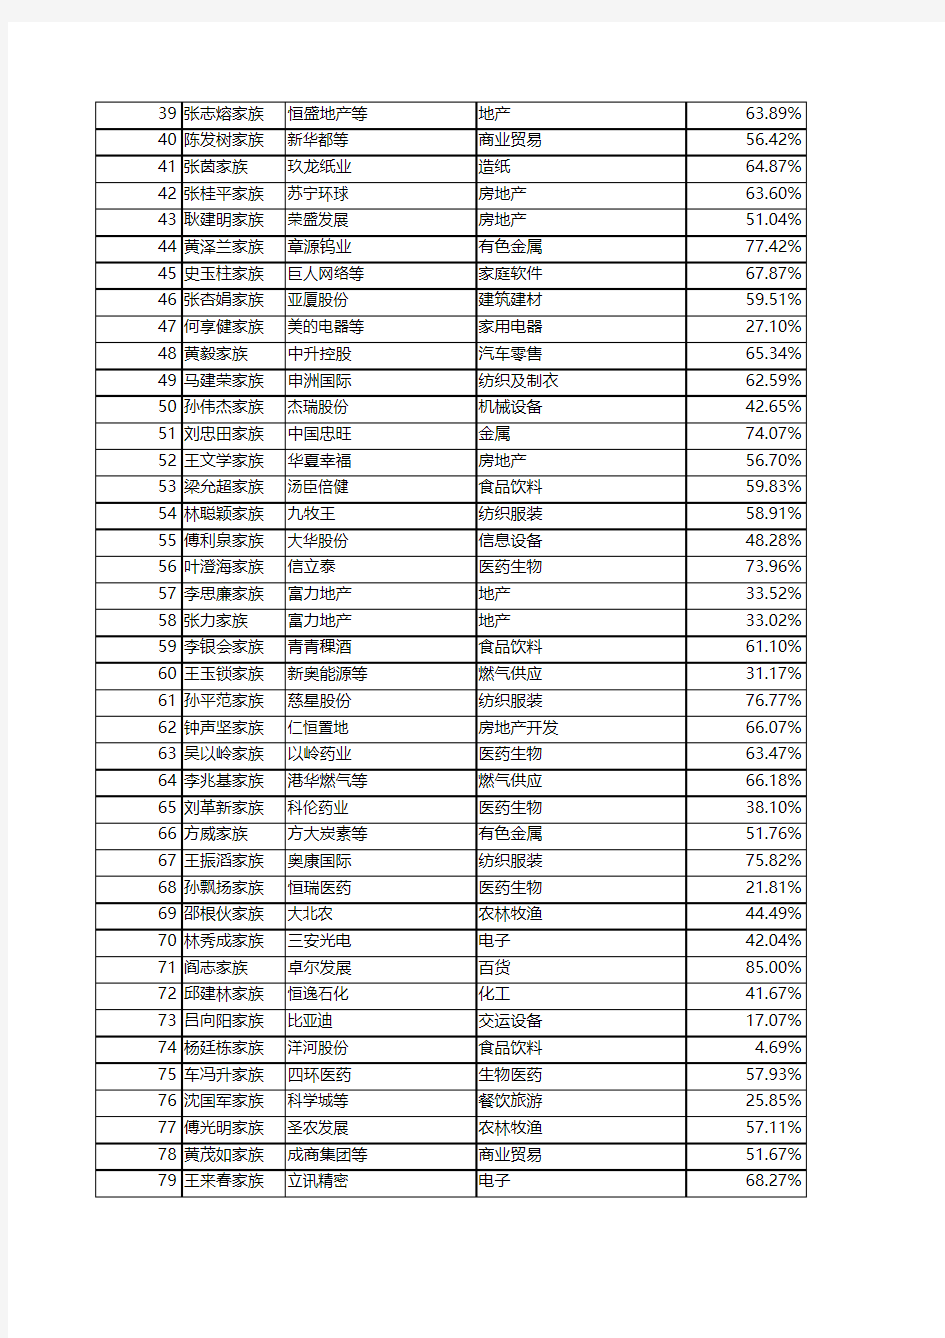 3000中国家族财富榜总榜单(Excel版本)